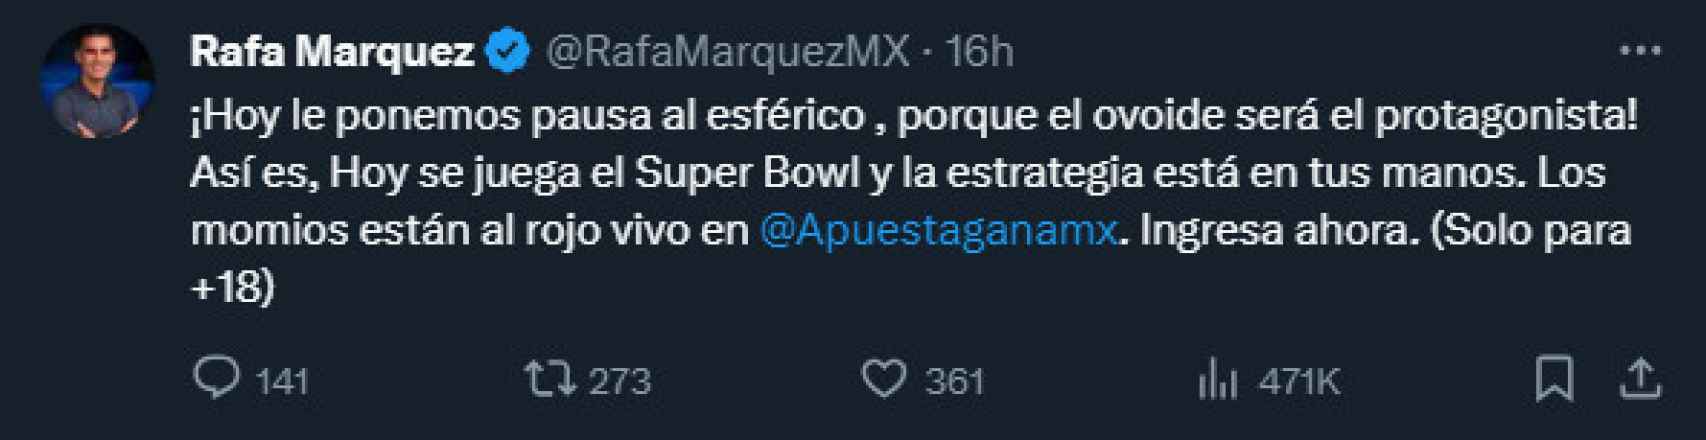 El tuit de Rafa Márquez sobre apostar en el Super Bowl